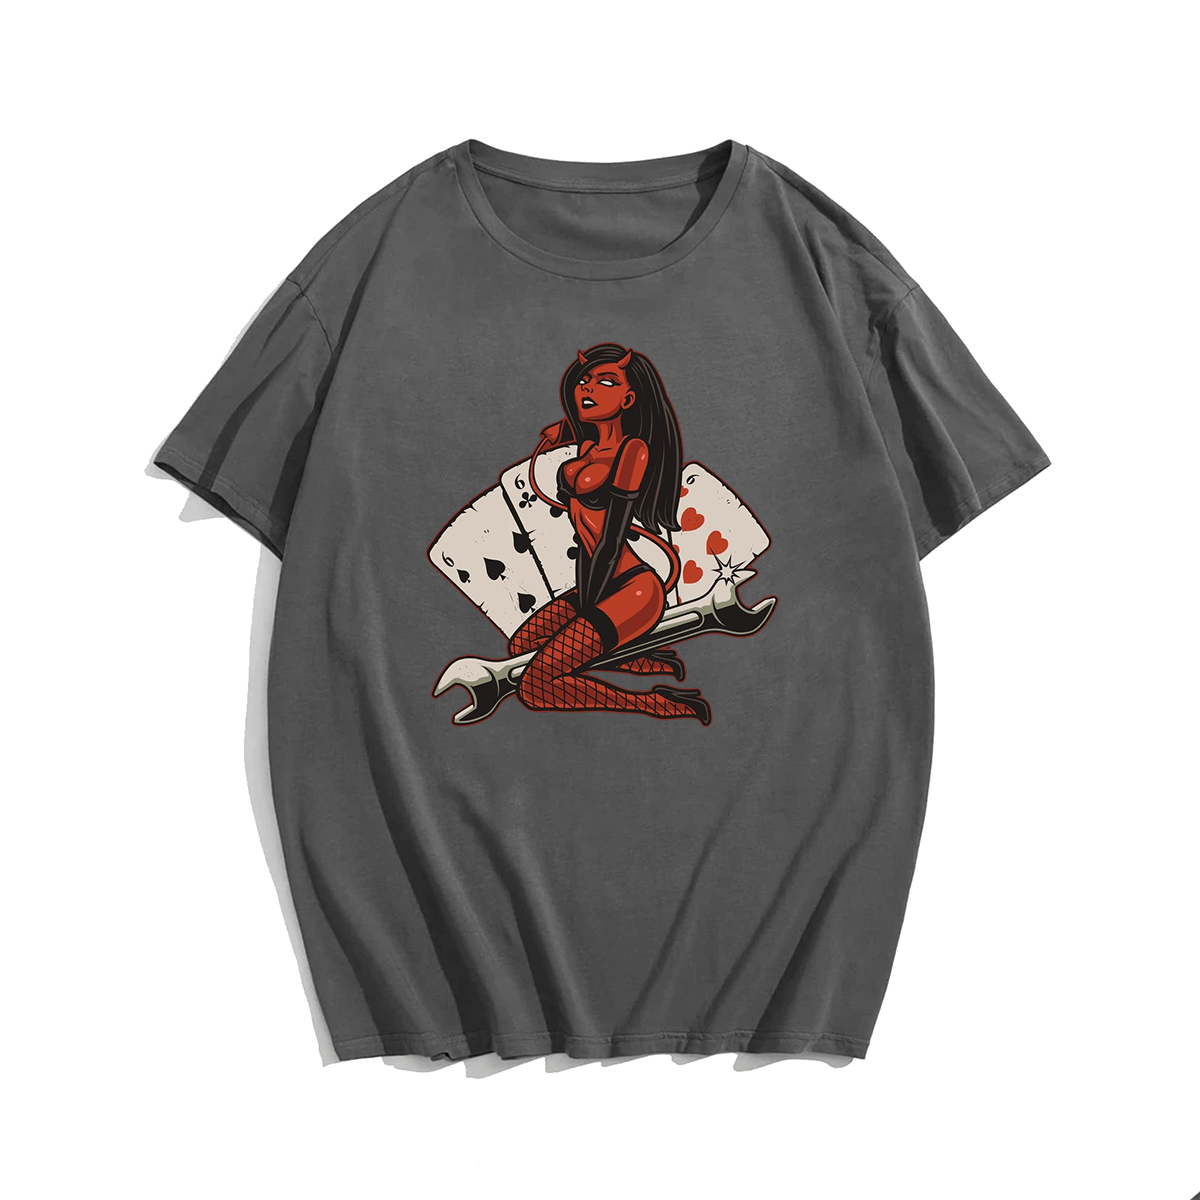 Sexy devil men's plus size T-shirt 100% cotton